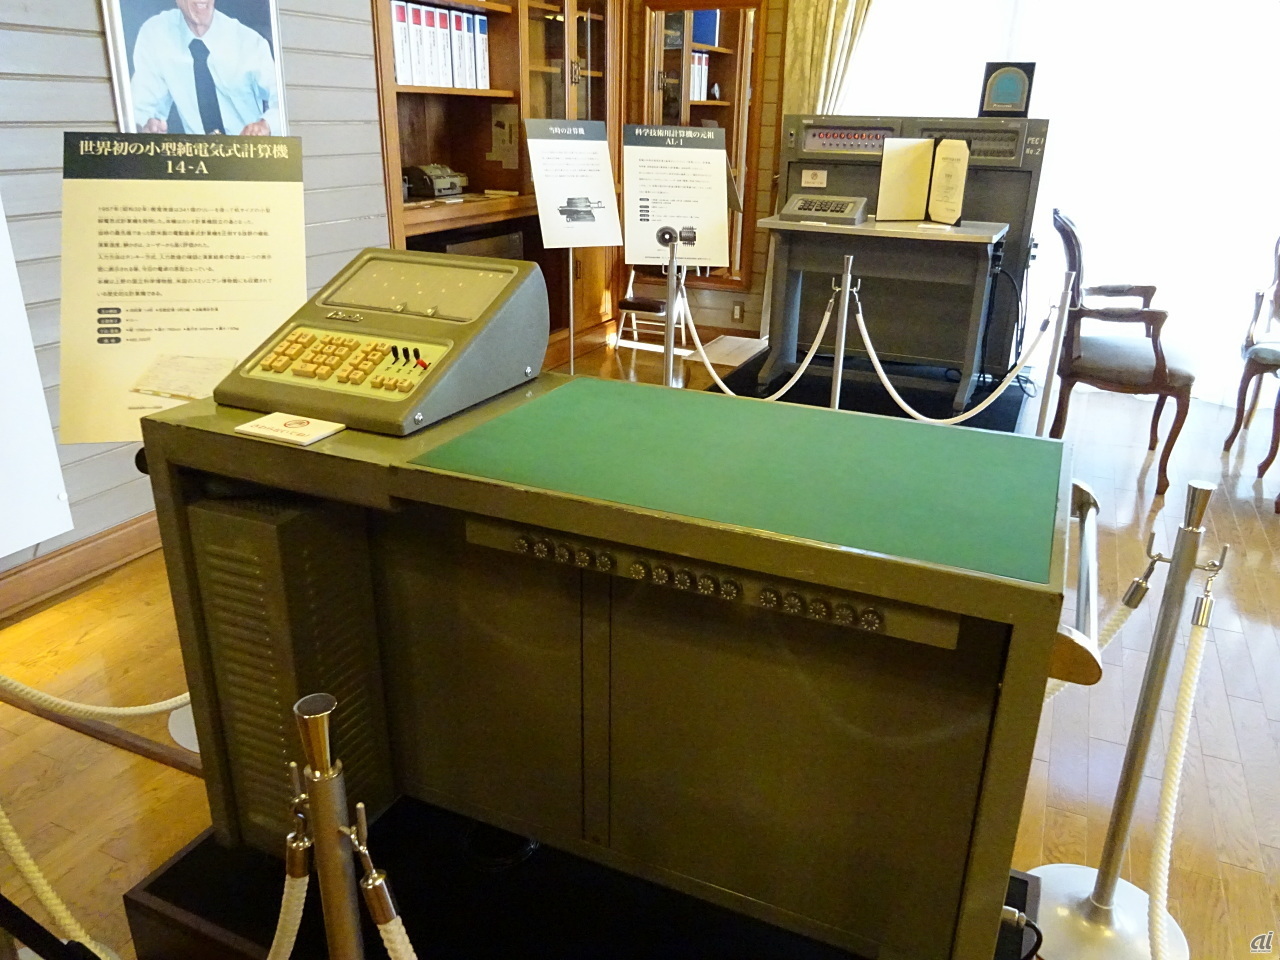 1957年に開発した世界初の小型純電気式計算機「14-A」も展示。実際に計算するところが見られる